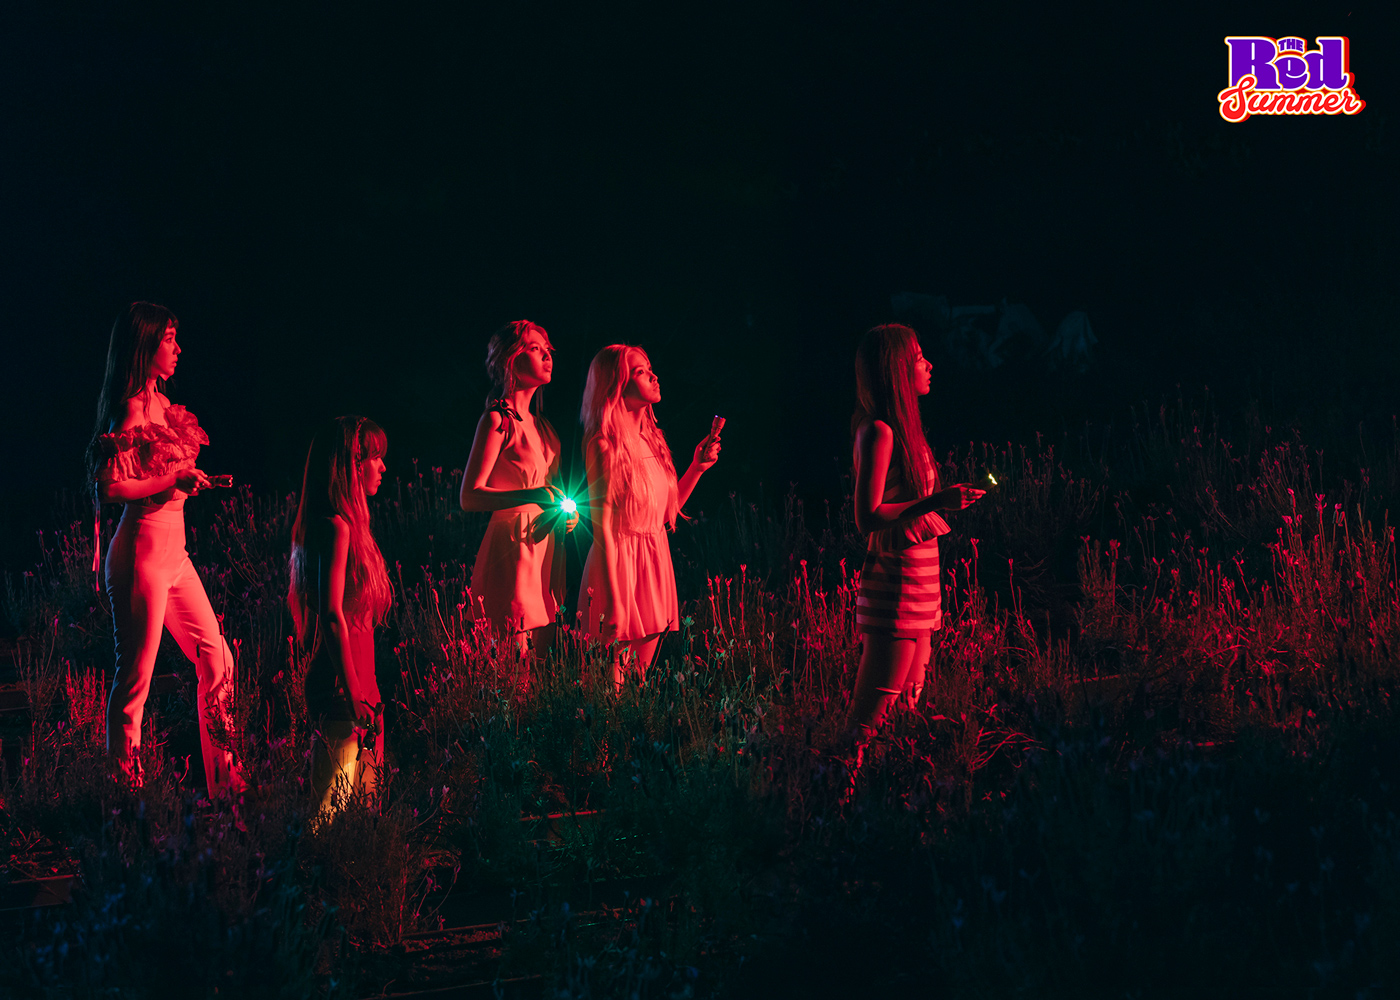 FULL HQ Red Velvet members teaser images and tracklist ...